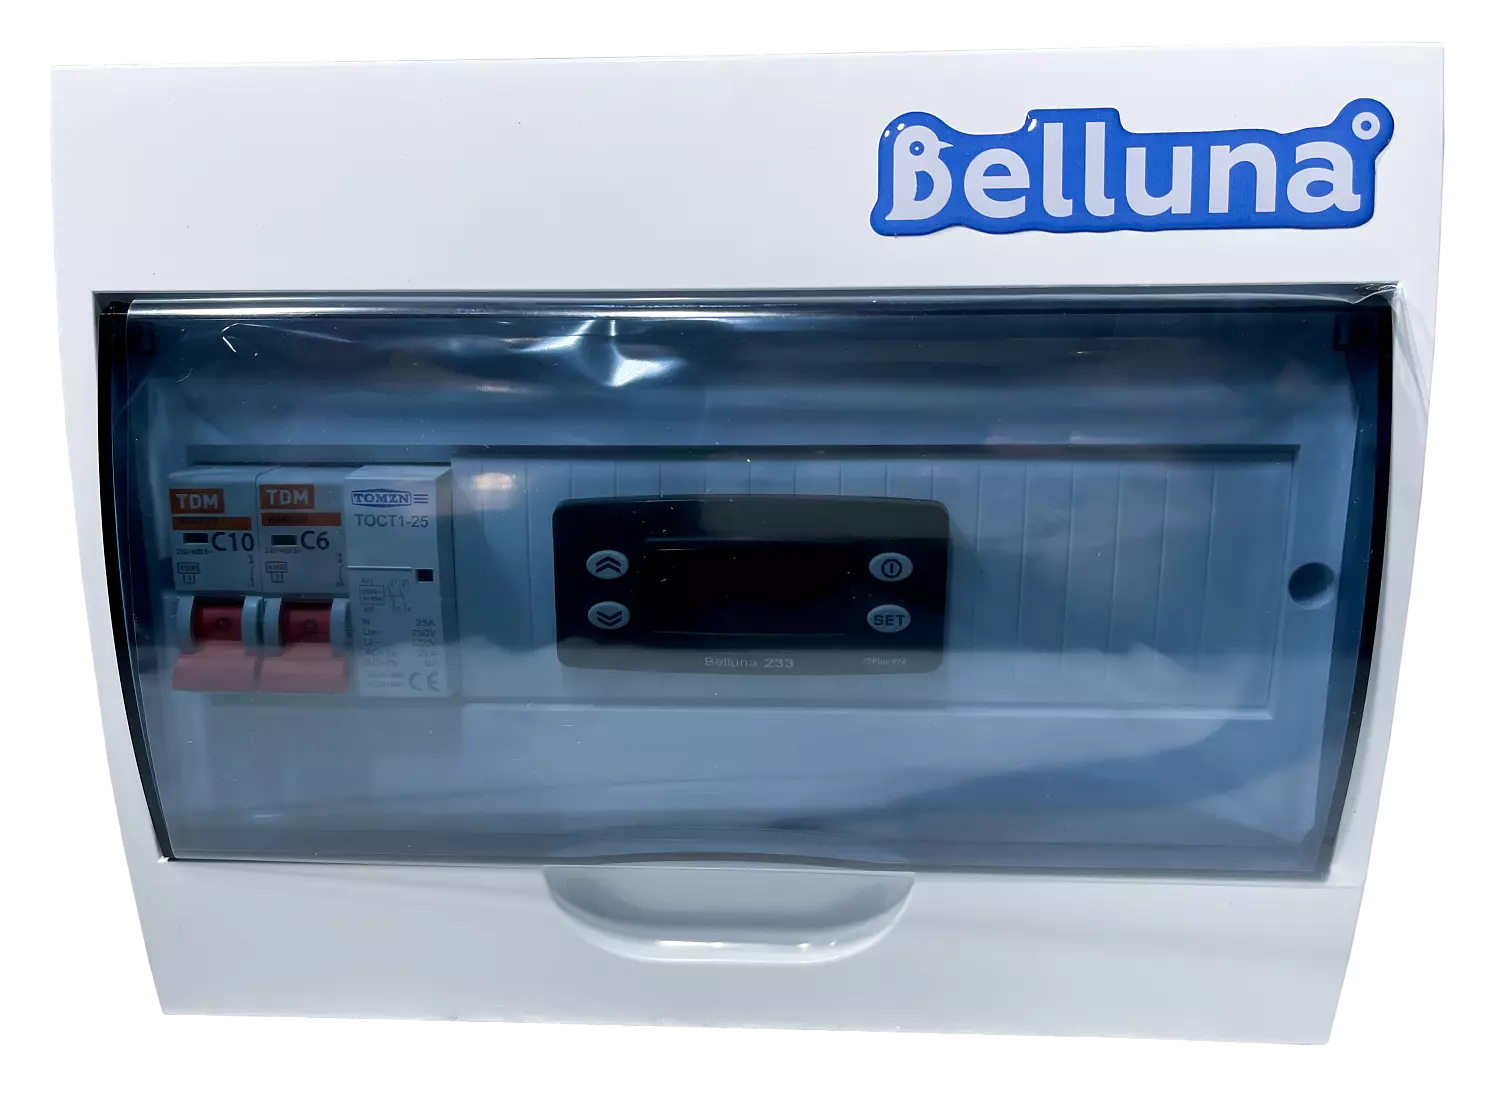 сплит-система Belluna U316 Тамбов